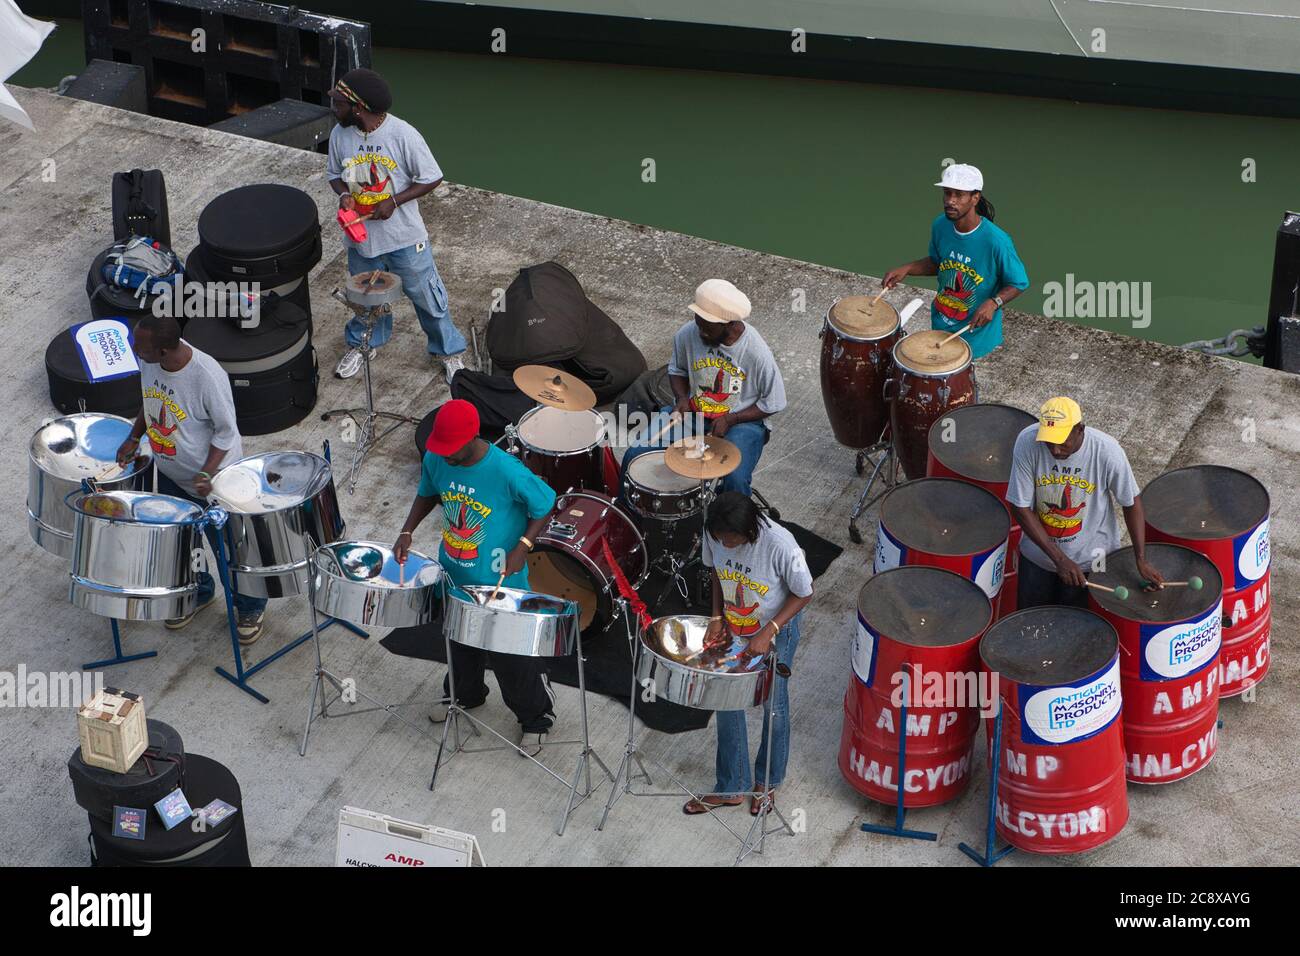 Una band d'acciaio suona sulla banchina per i passeggeri che visitano le navi da crociera a St Johns, Antigua, Caraibi, Indie Occidentali Foto Stock